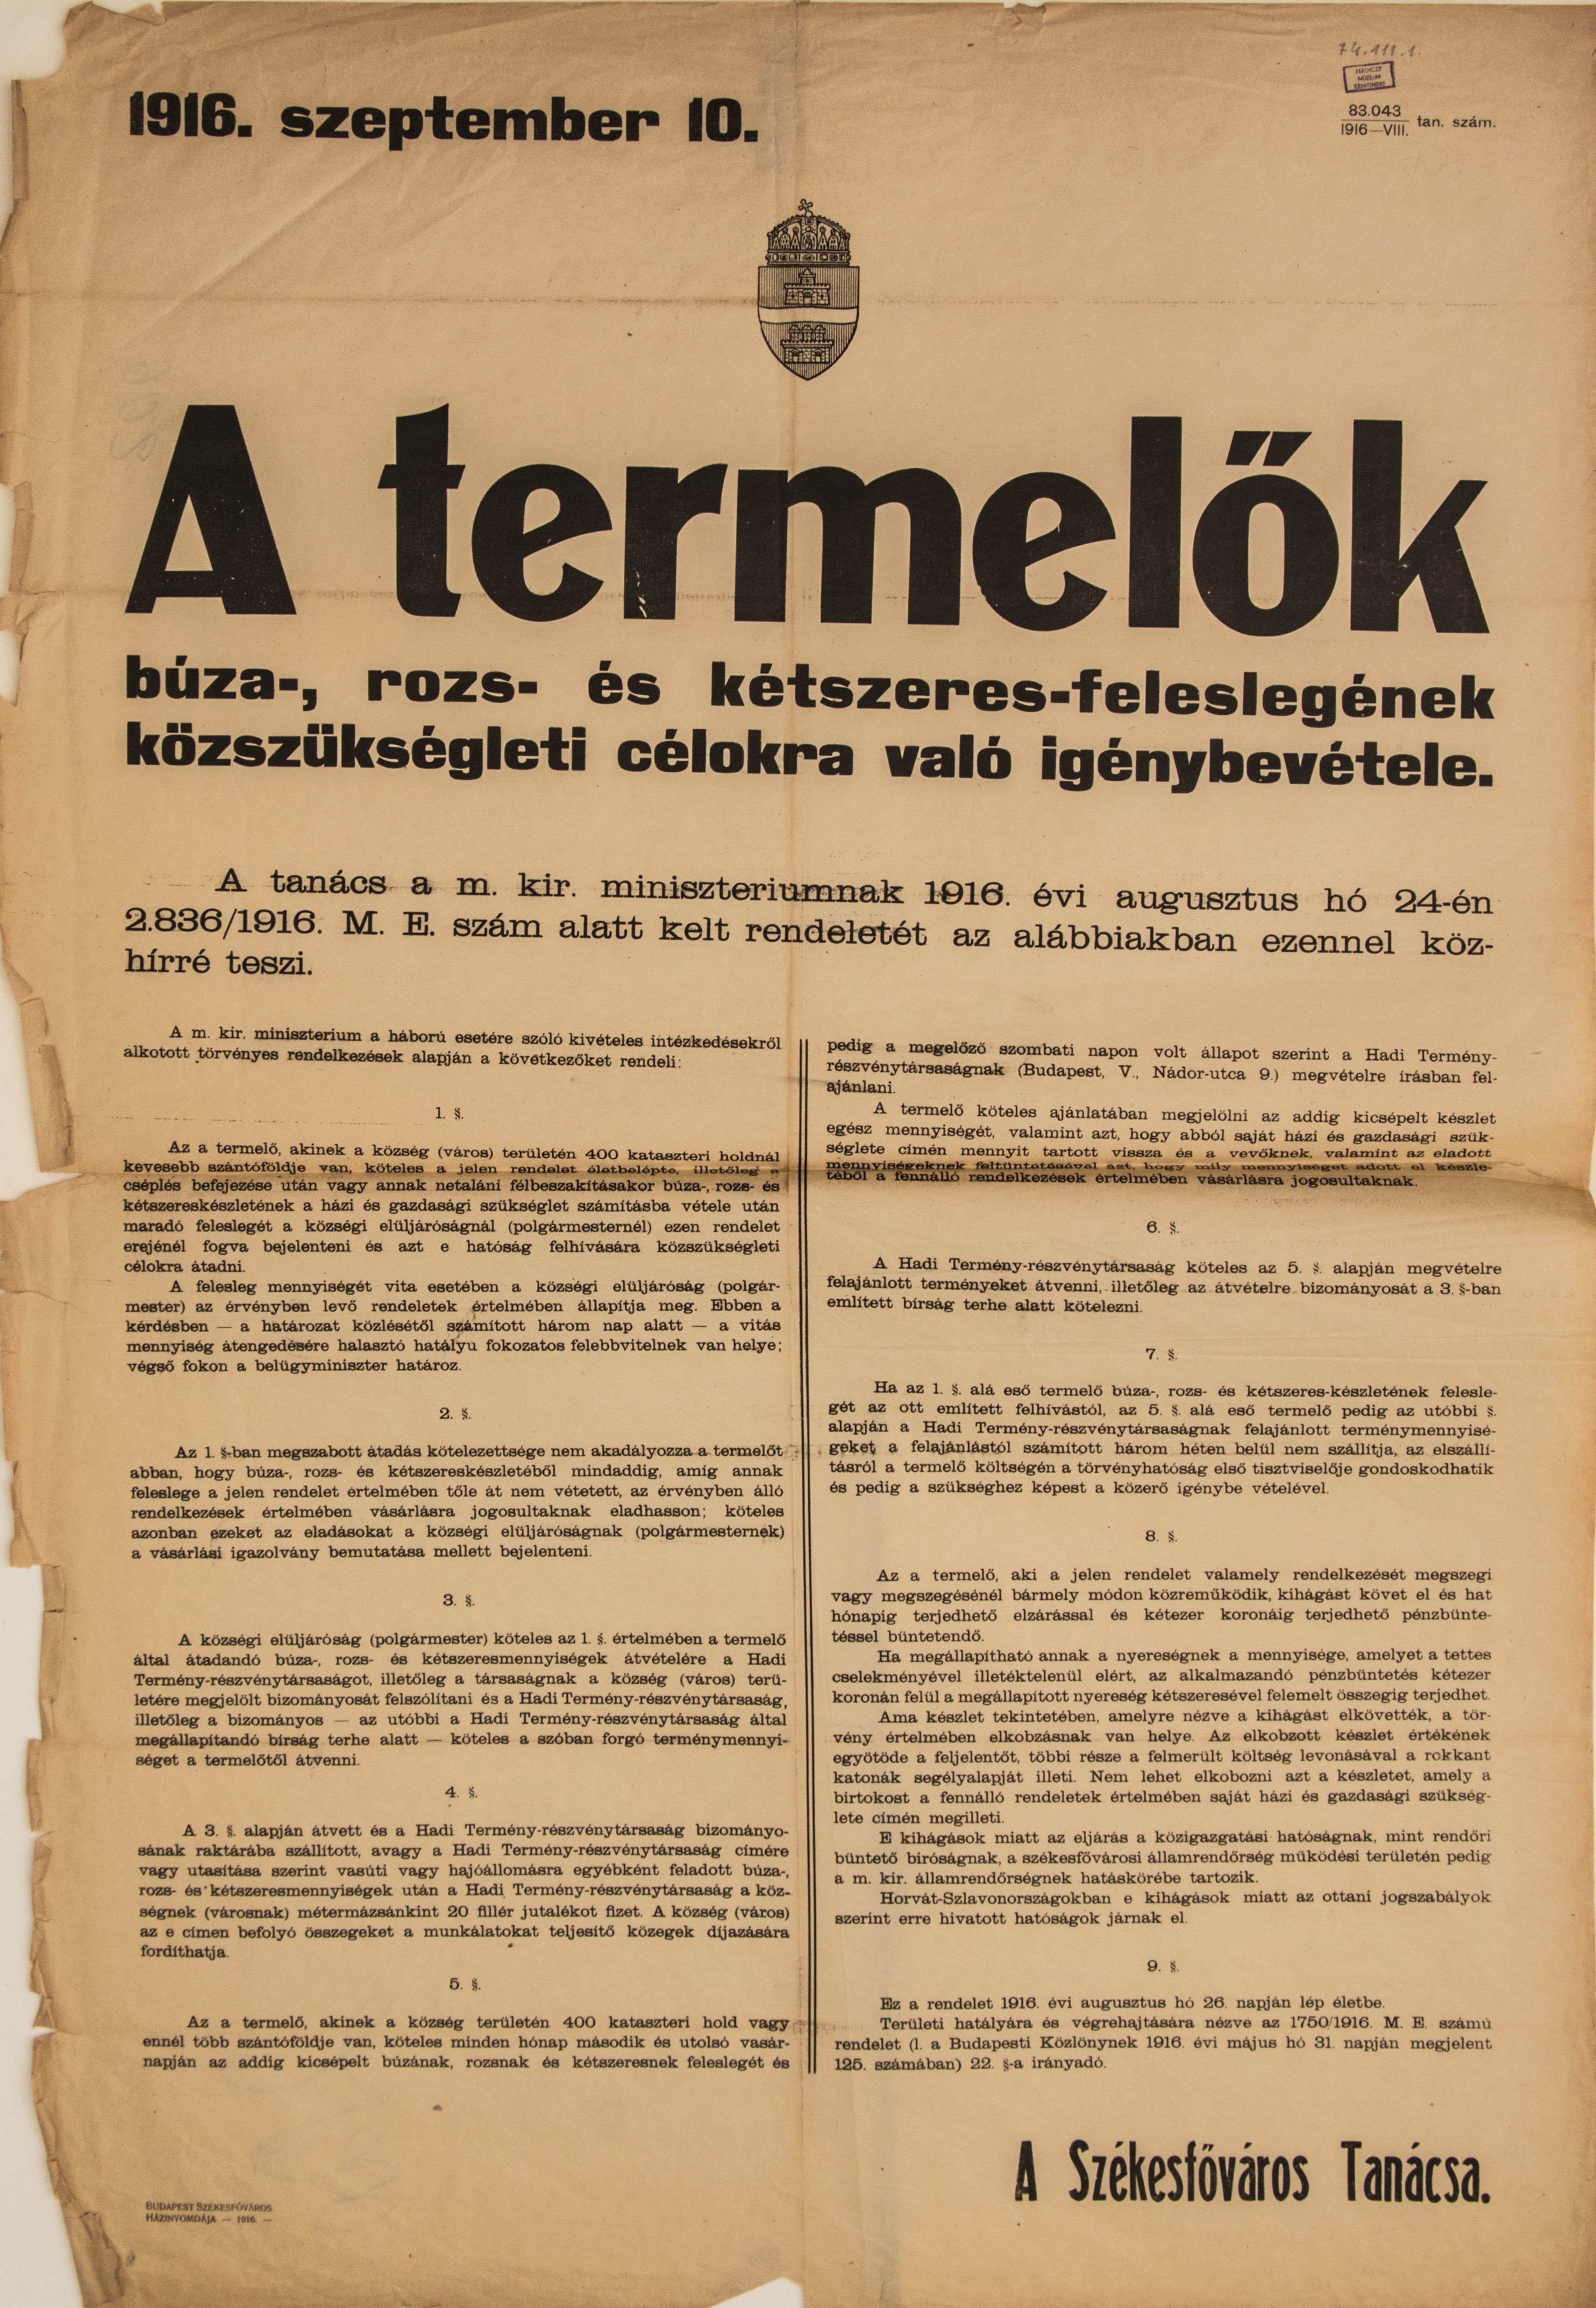 A termelők feleslegének közszükségleti célokra való igénybevétele, 1916.09.10. (Ferenczy Múzeumi Centrum CC BY-NC-SA)